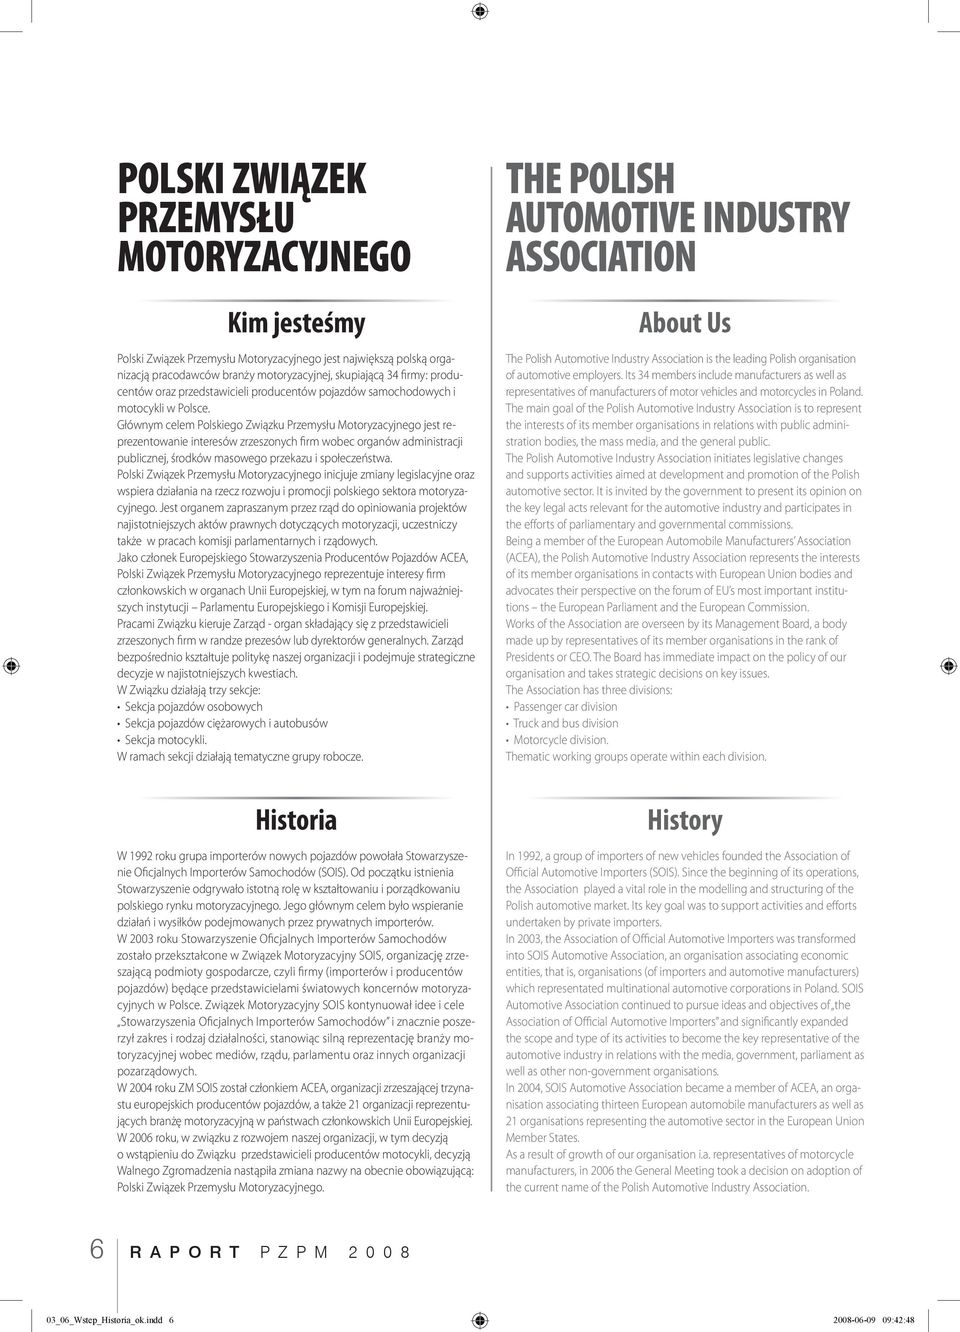 Głównym celem Polskiego Związku Przemysłu Motoryzacyjnego jest reprezentowanie interesów zrzeszonych firm wobec organów administracji publicznej, środków masowego przekazu i społeczeństwa.